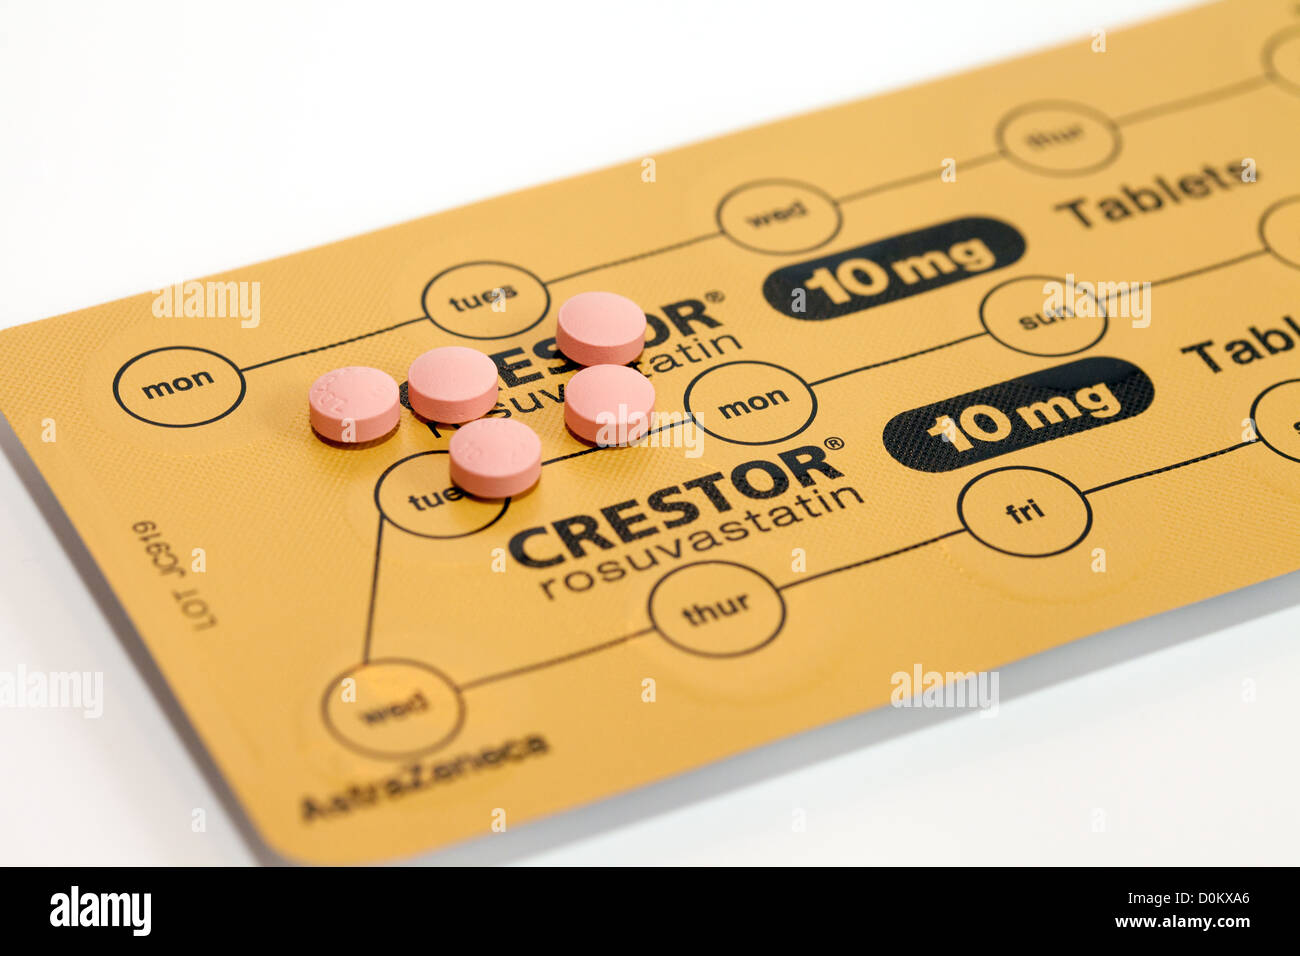 Crestor Rosuvastatin, également connu sous le nom de statin médicaments statines médicaments pour diminuer le cholestérol Banque D'Images